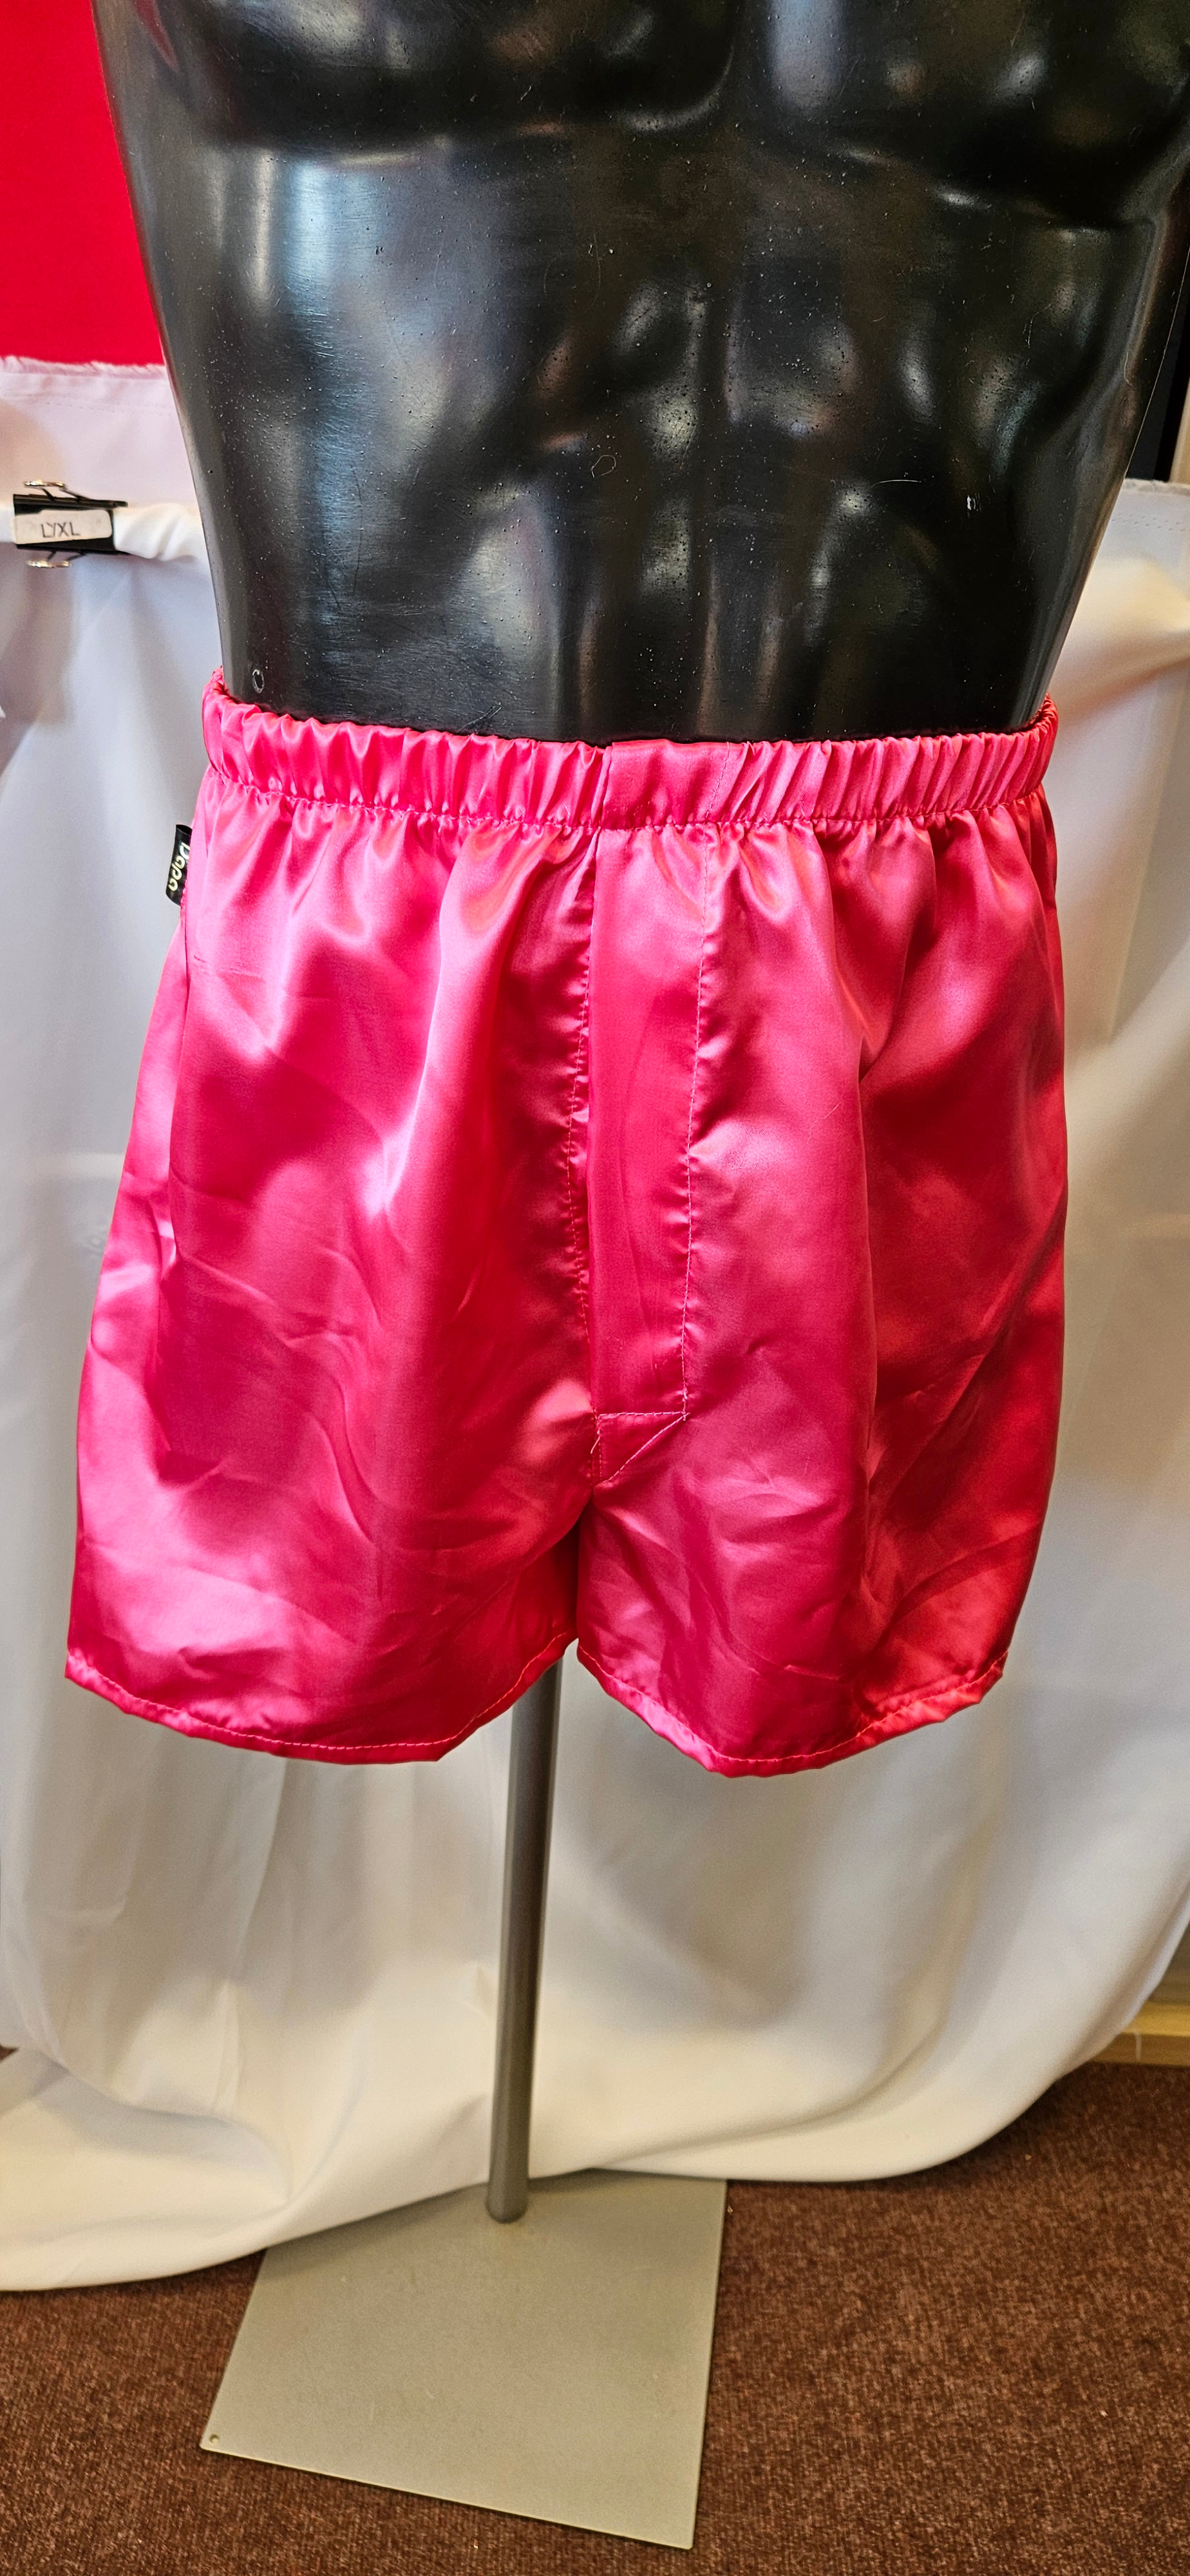 LIQUID SATIN Boxer Shorts - Small to 4XL - Hot Pink